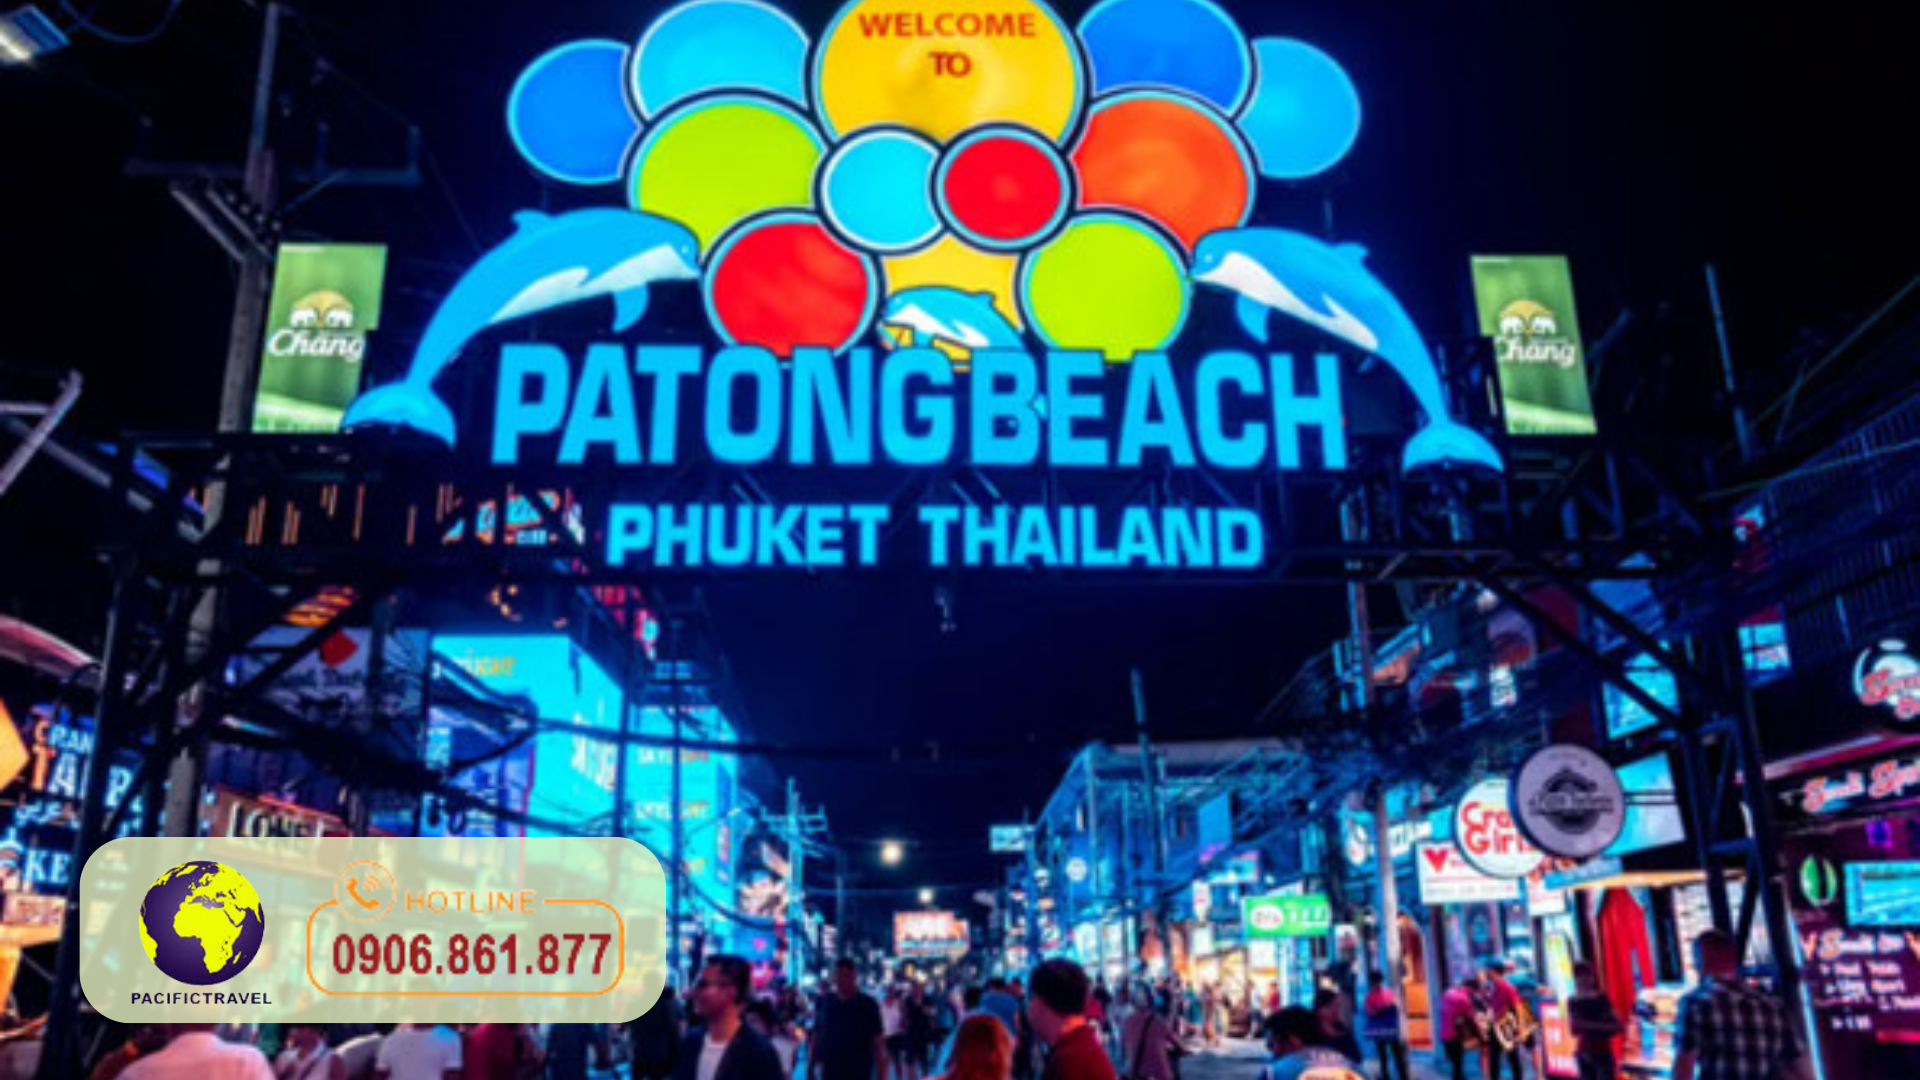 Du Lịch Thái Lan Phuket